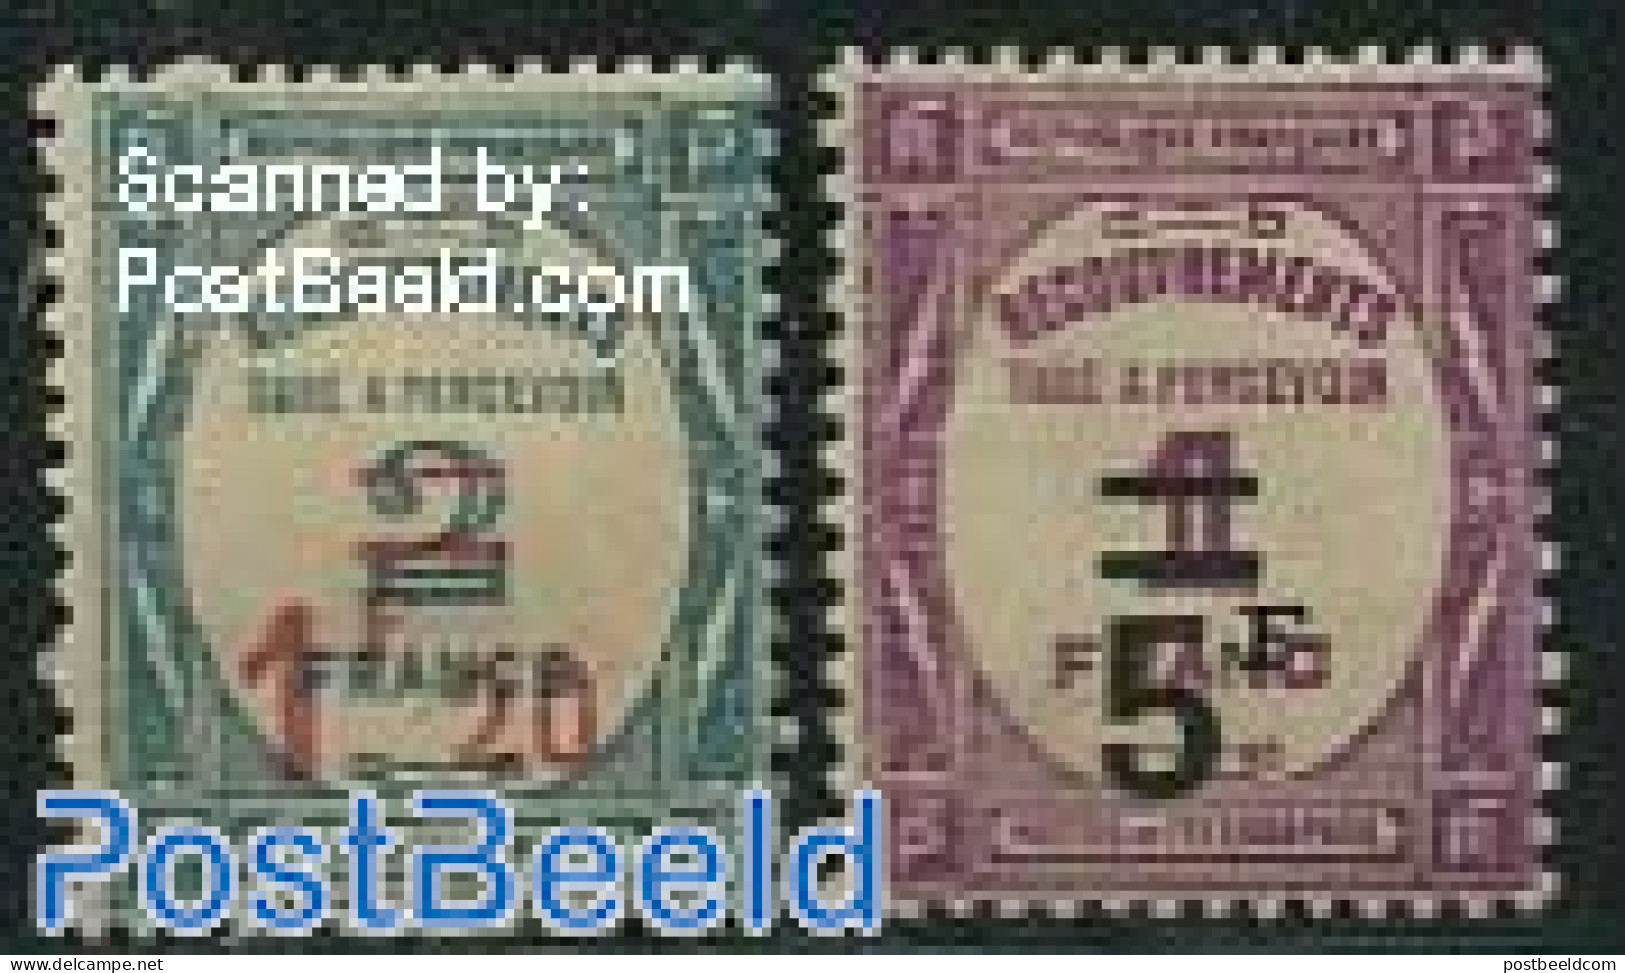 France 1929 Postage Due, Overprints 2v, Unused (hinged) - 1859-1959 Nuovi